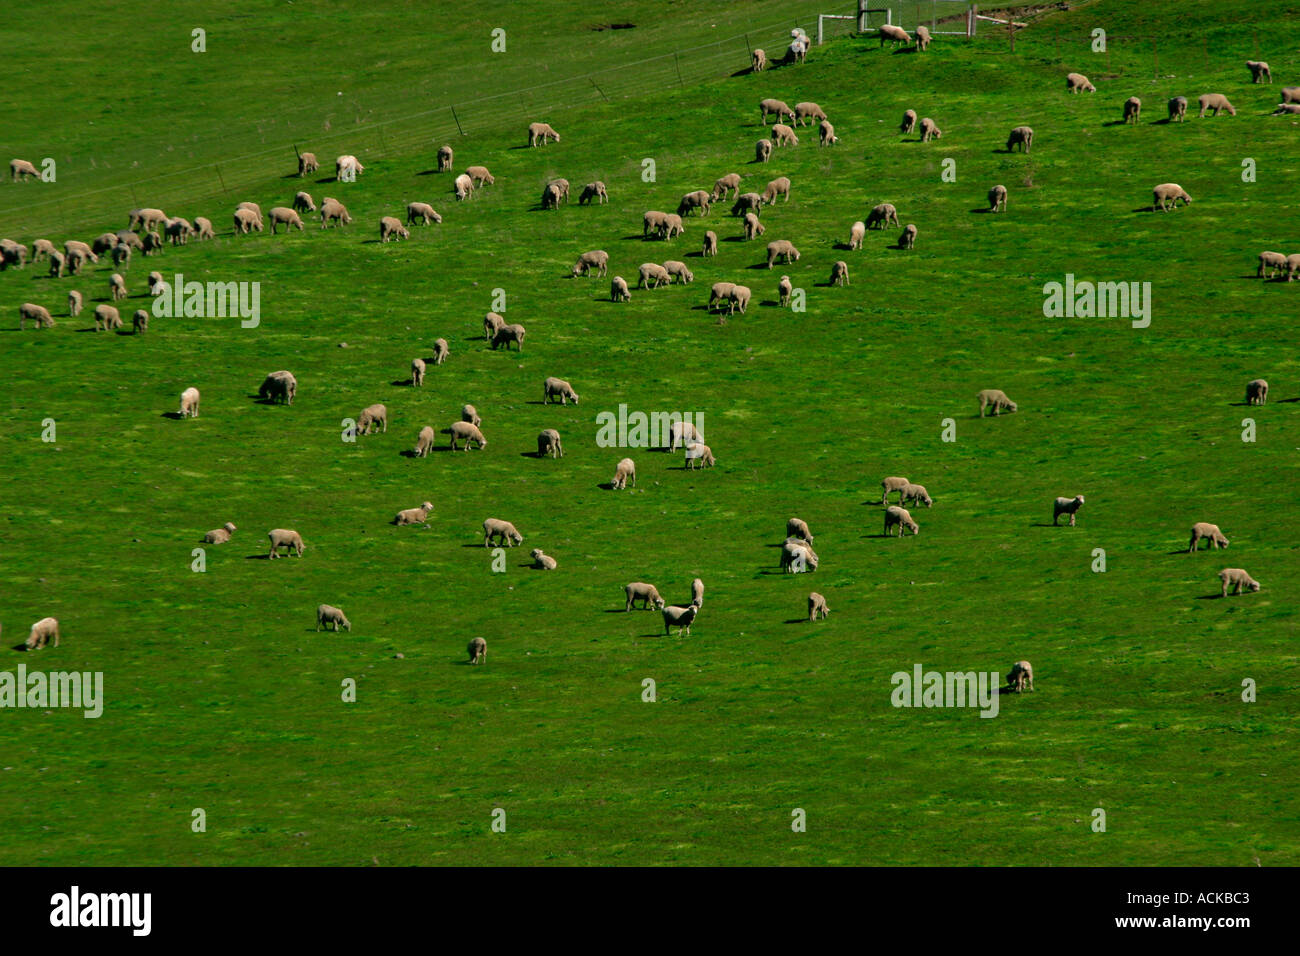 Sheep farm New Zealand Stock Photo